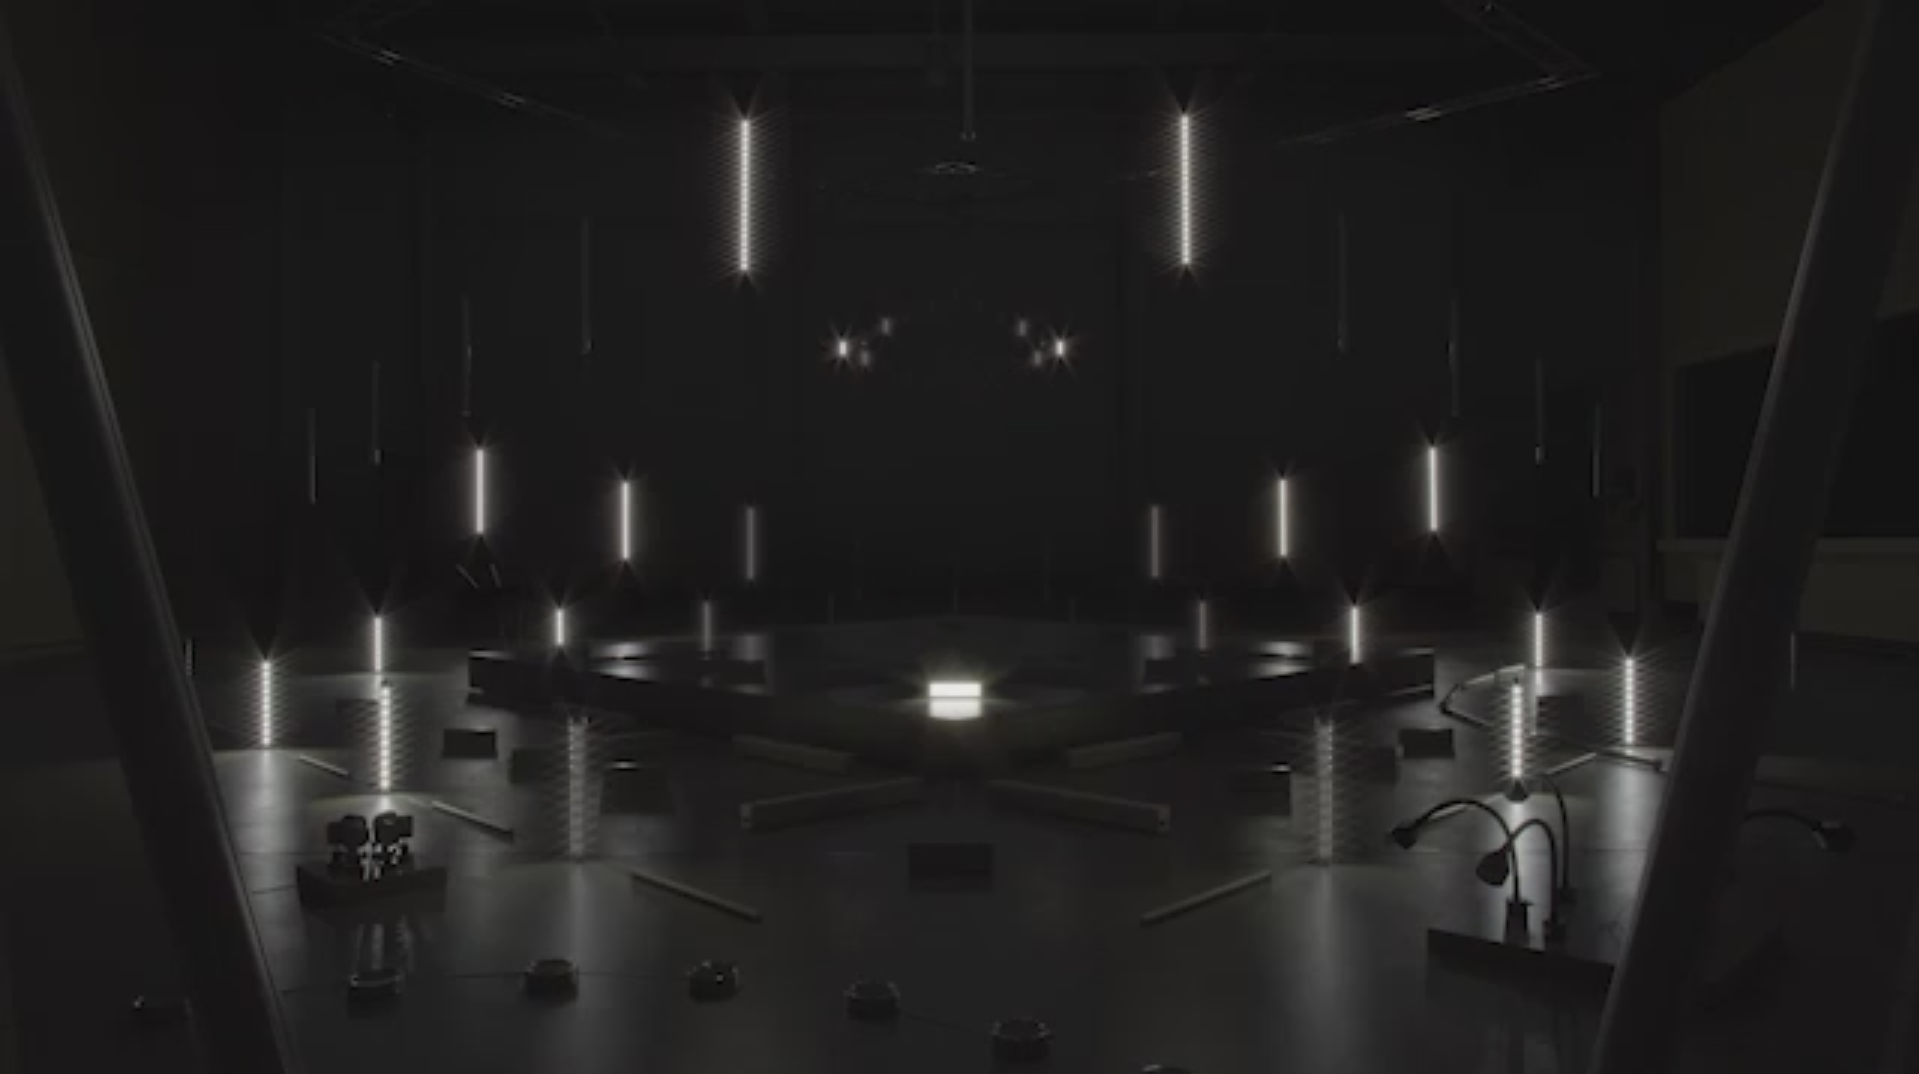 Lichtinstallation in dunkler Halle mit mehreren leuchtenden LEDs